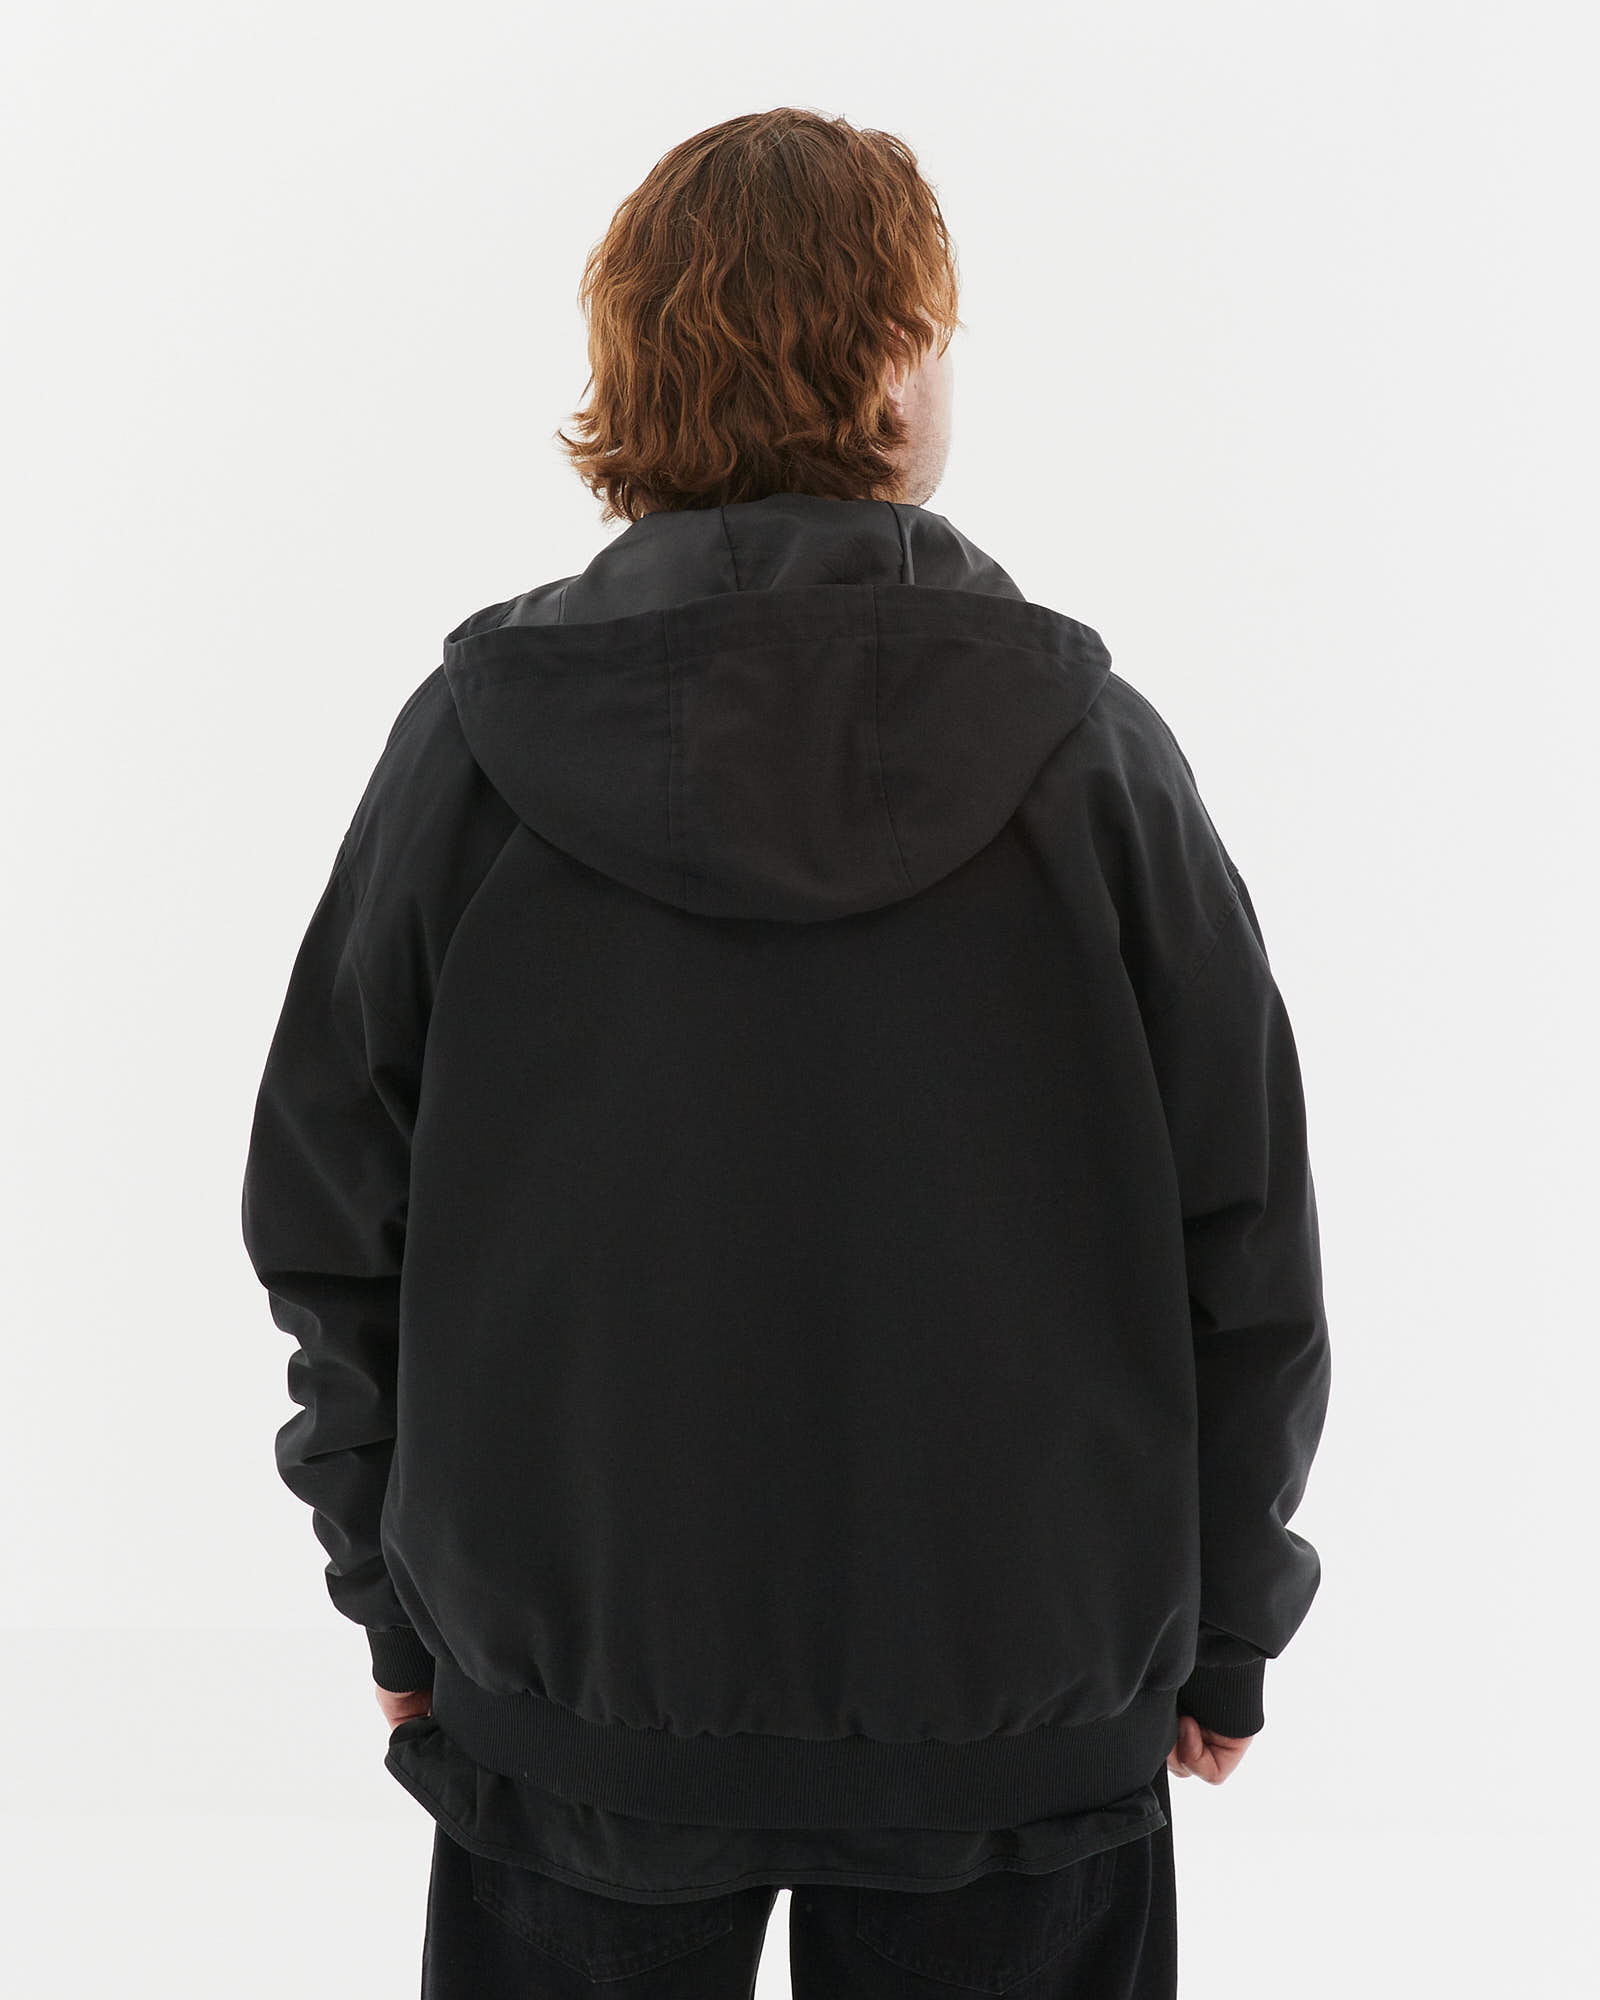 Куртка Anteater Comfy Jacket - фото 3